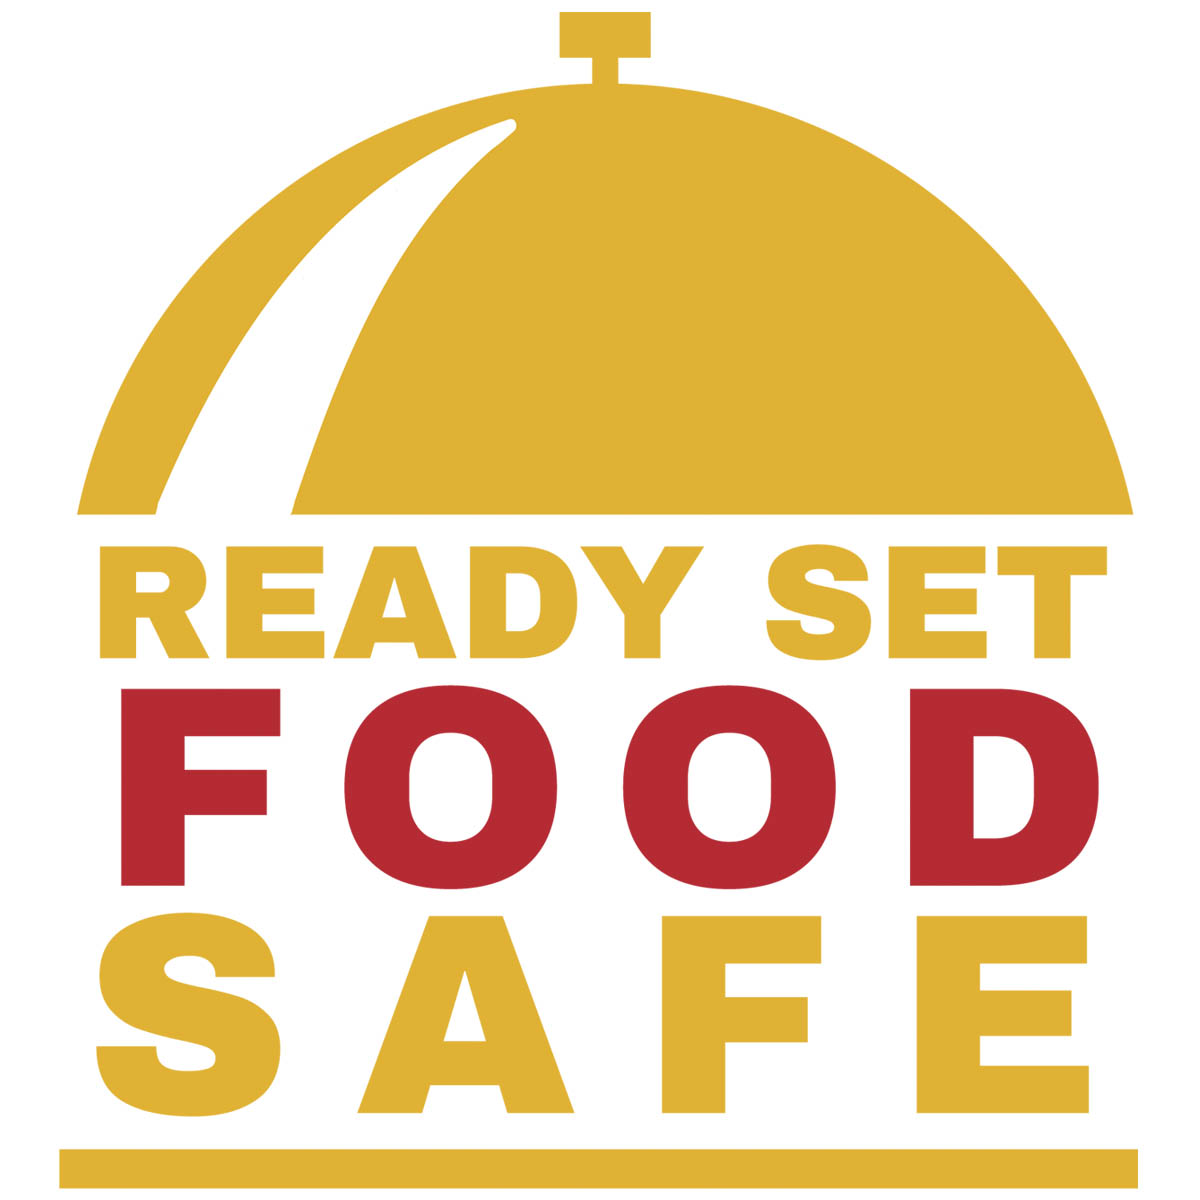 Ready, Set, Food Safe curriculum logo